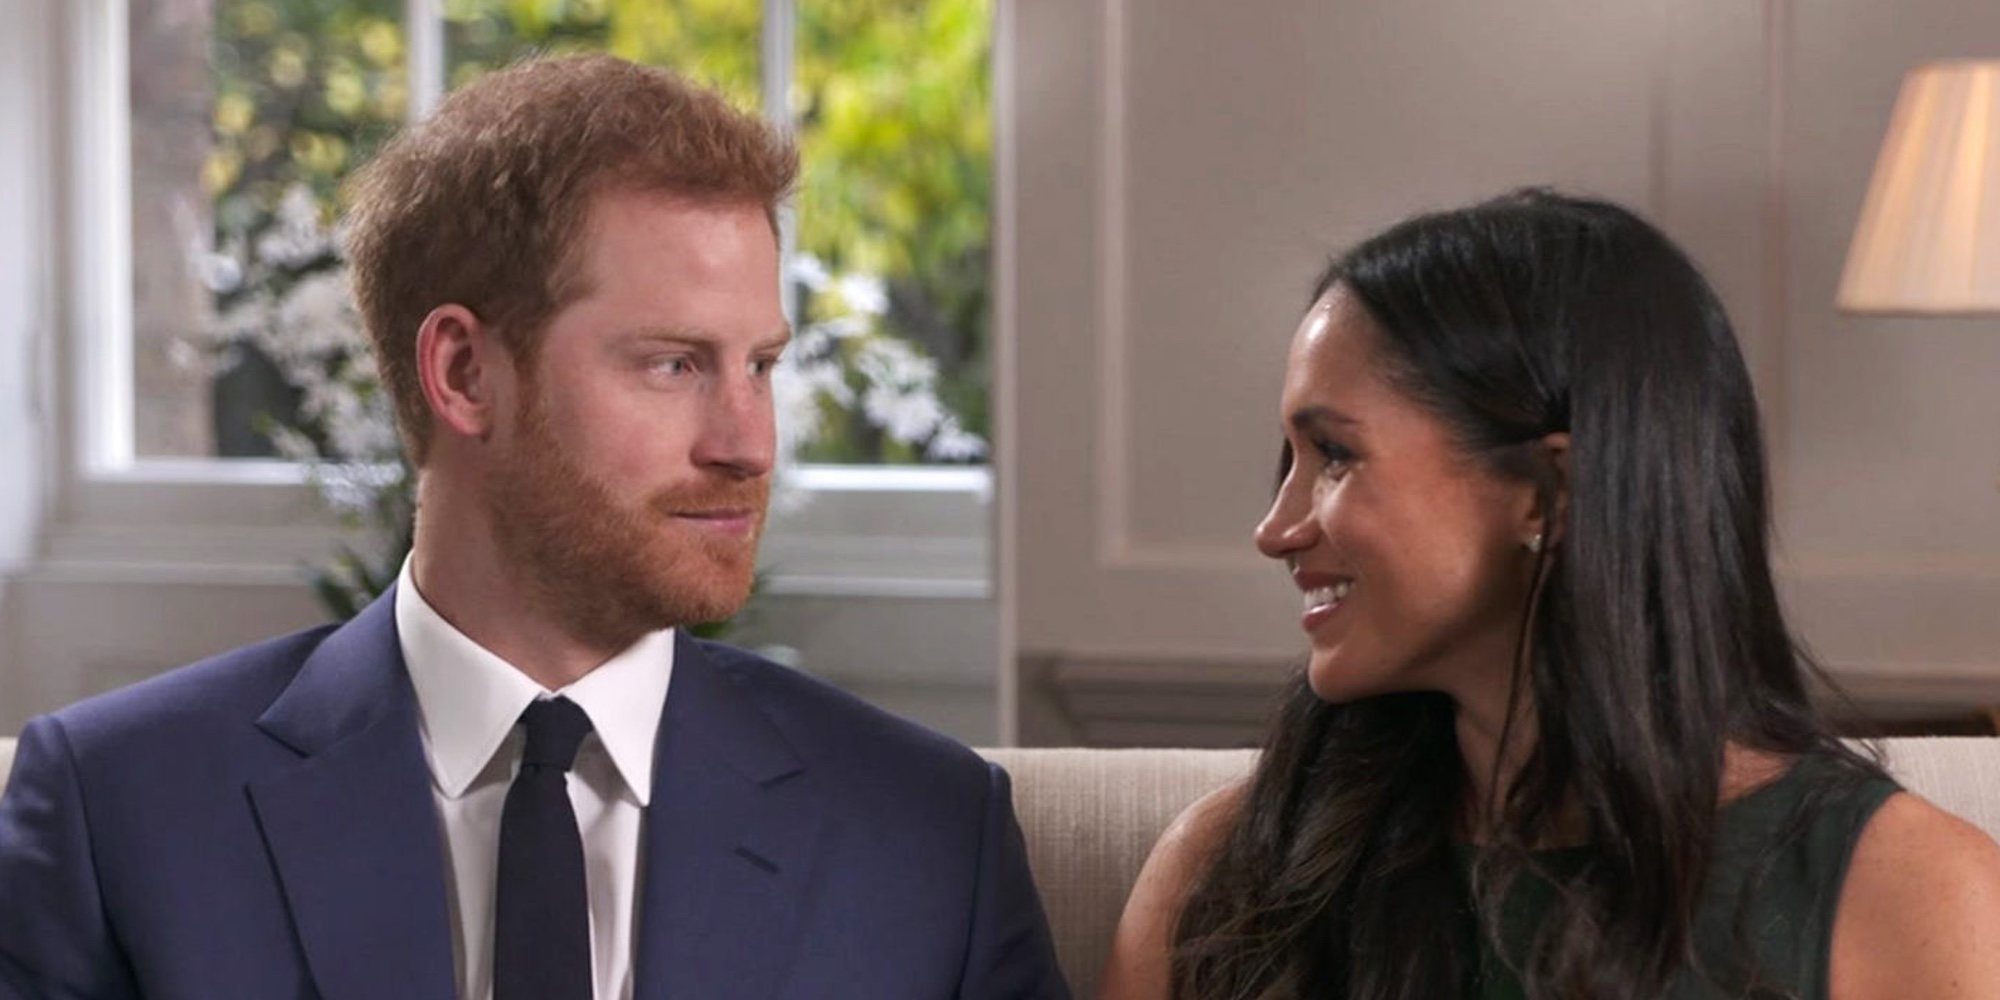 La boda del Príncipe Harry y Meghan Markle será retransmitida en cines de Estados Unidos